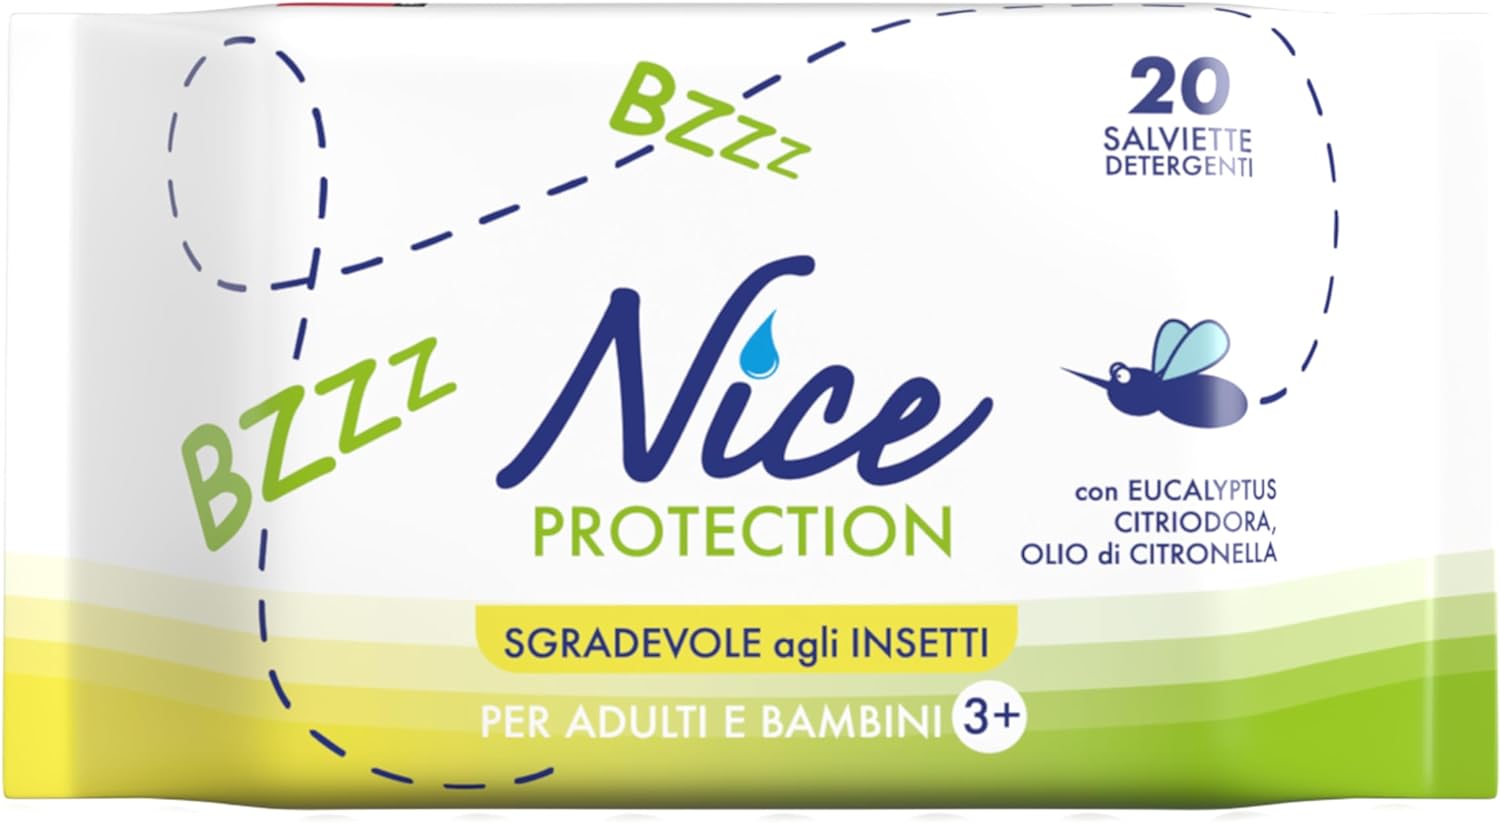 Salviette Antizanzare Nice Protection Confezione da 20 Salviette Formato Pocket.